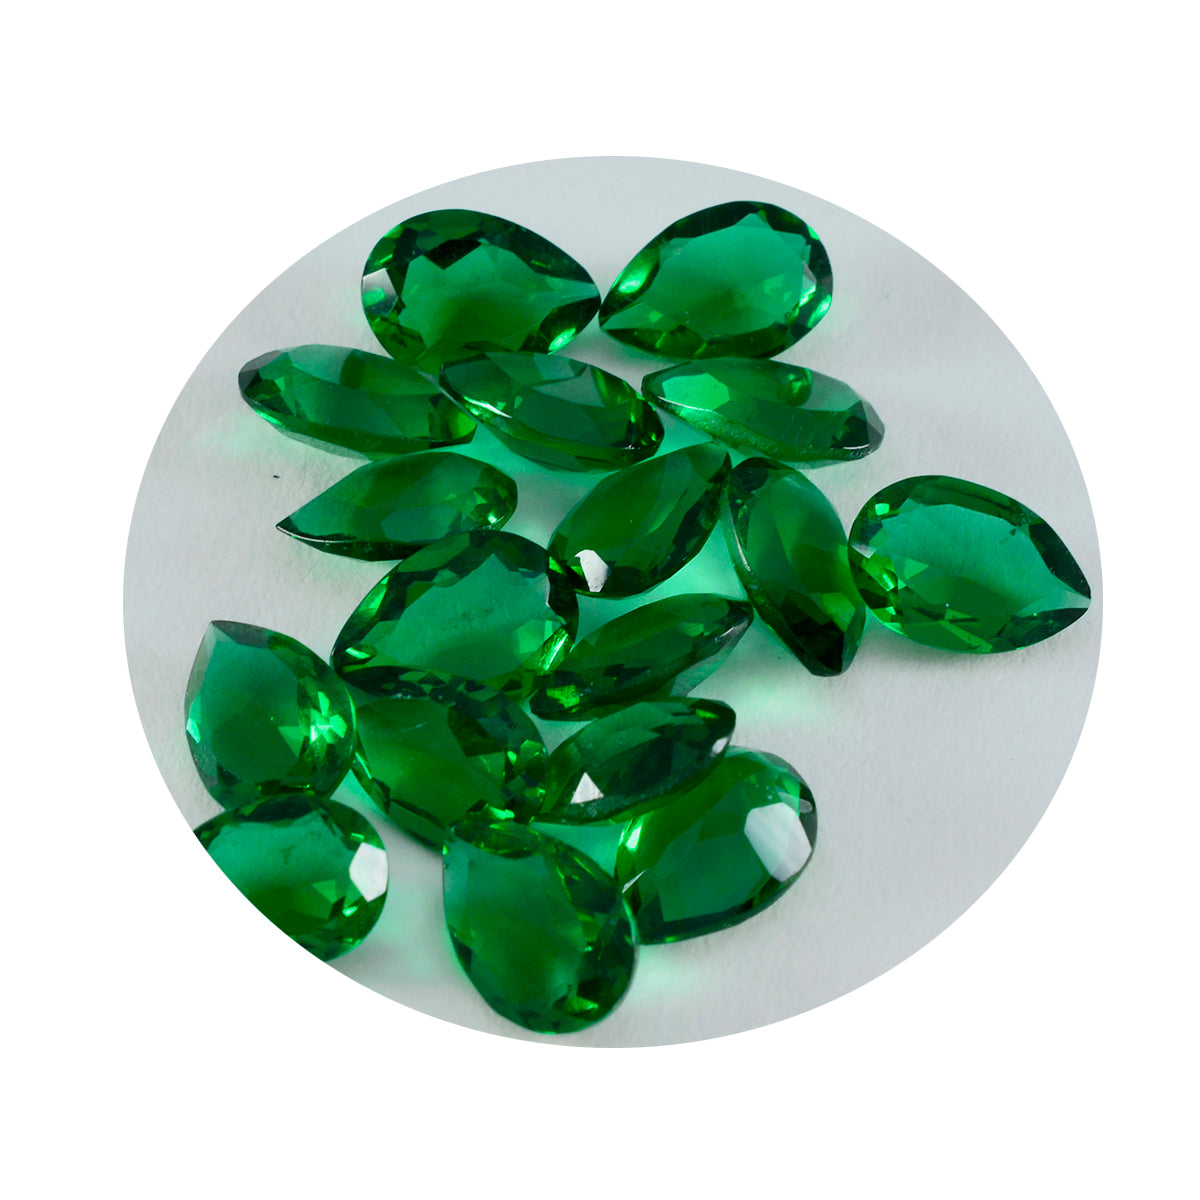 Riyogems 1 Stück grüner Smaragd, CZ, facettiert, 6 x 9 mm, Birnenform, fantastische Qualitätsedelsteine